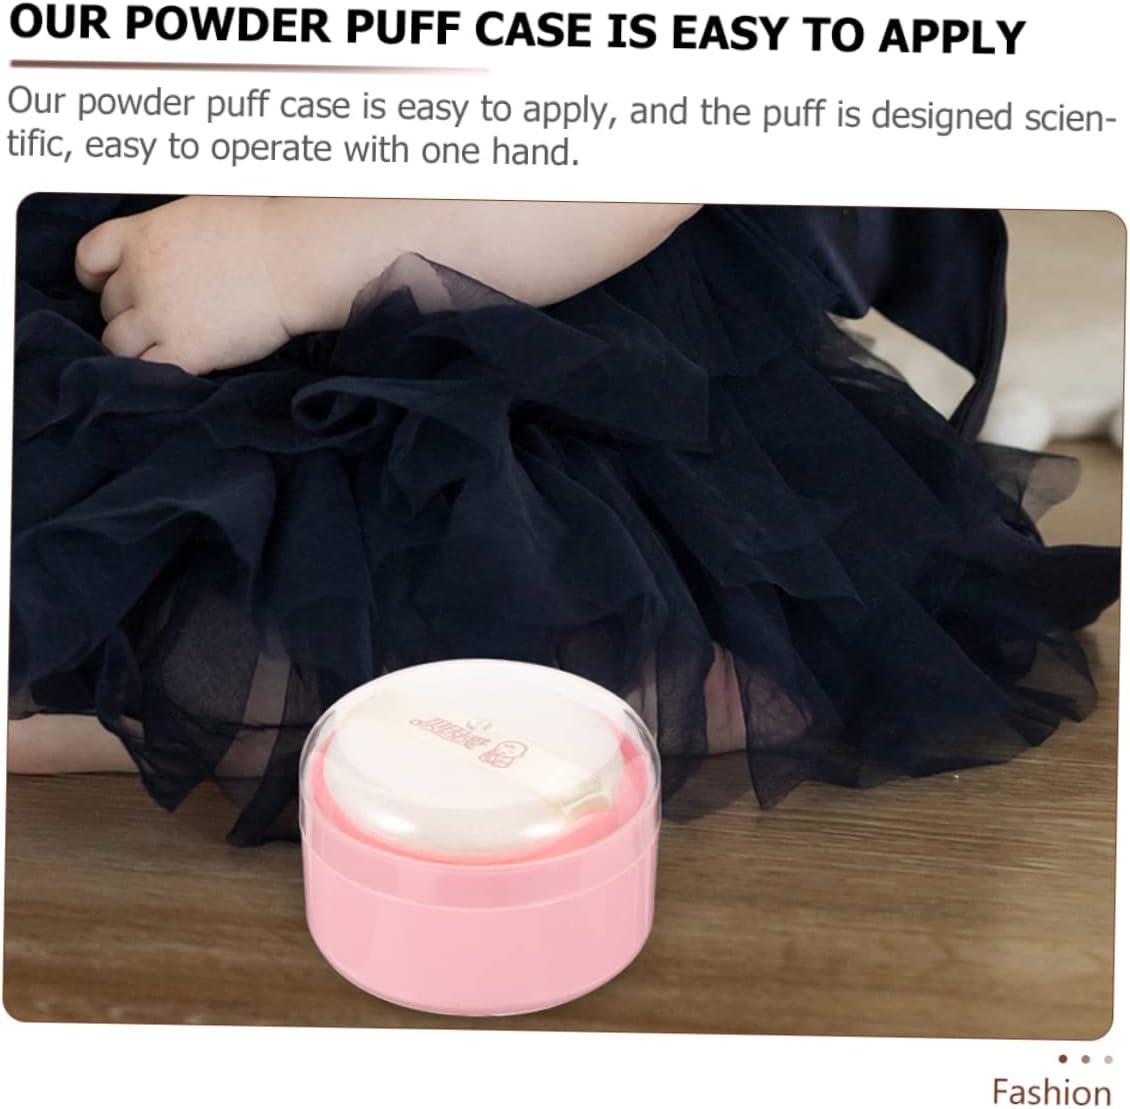 After-bath body powder box ,empty powder case powder puff